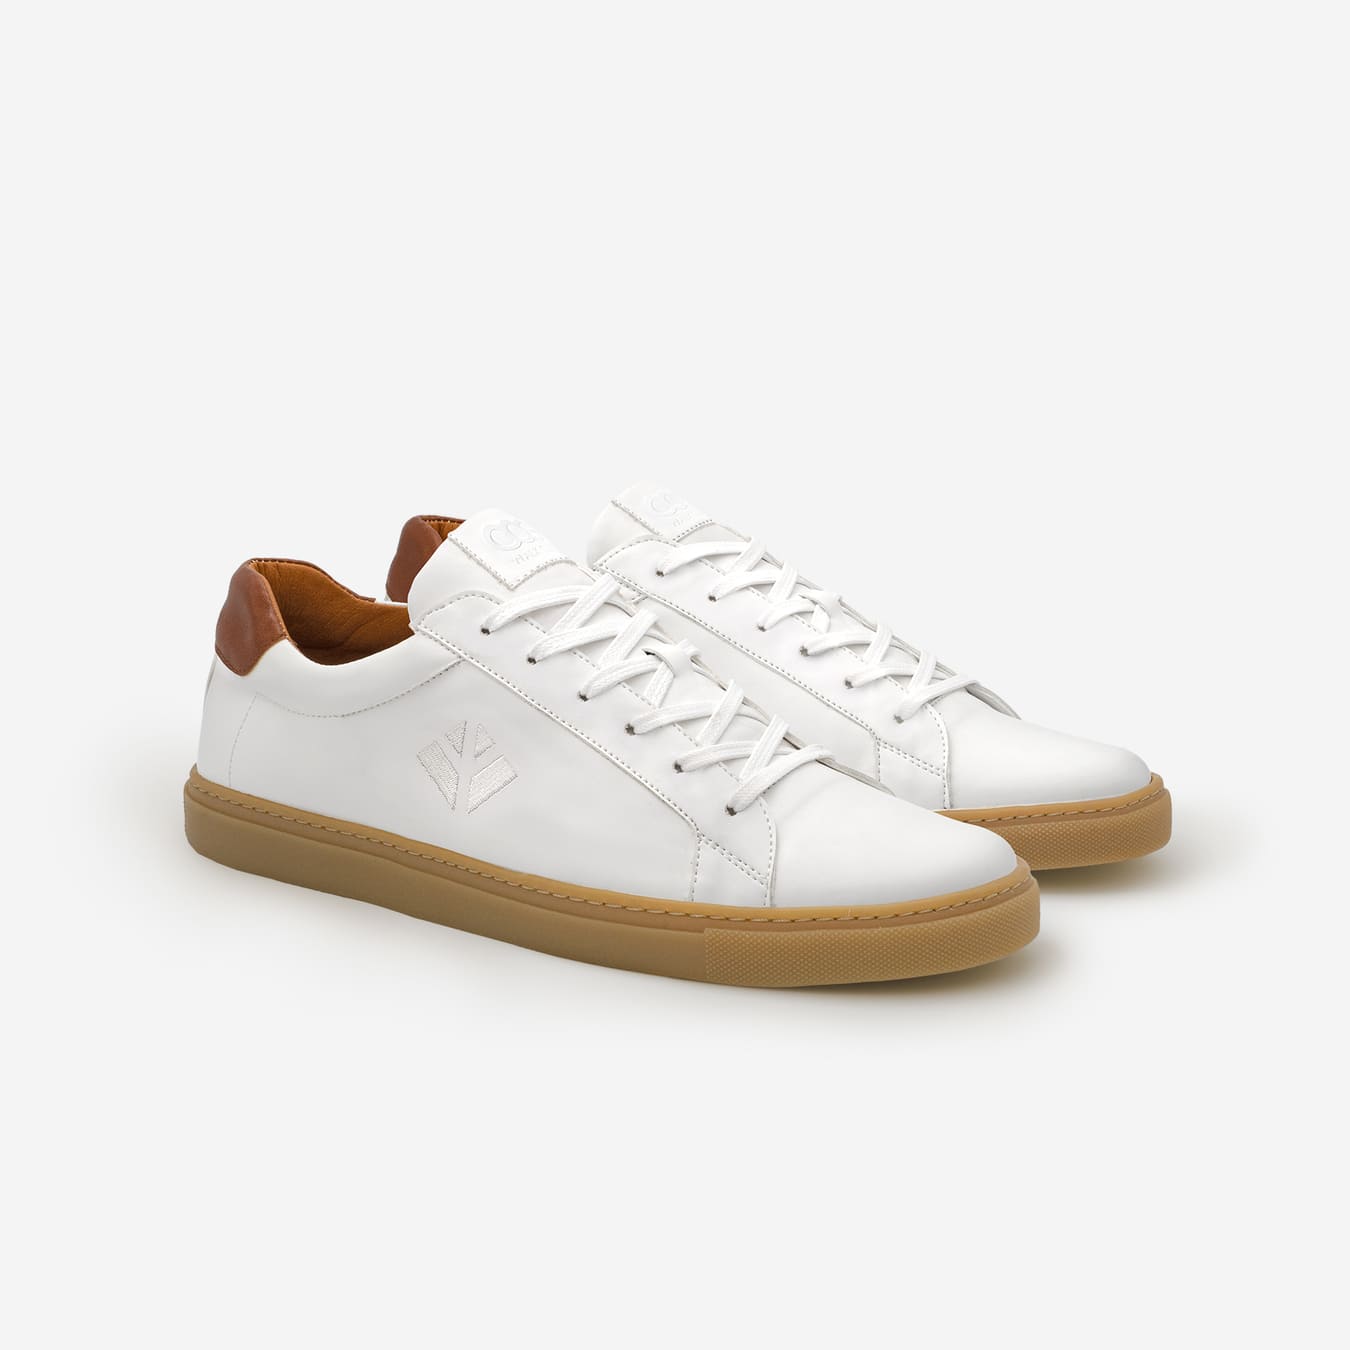 Sneakers baskets basses végan et écologique blanc marron - Winton Cog